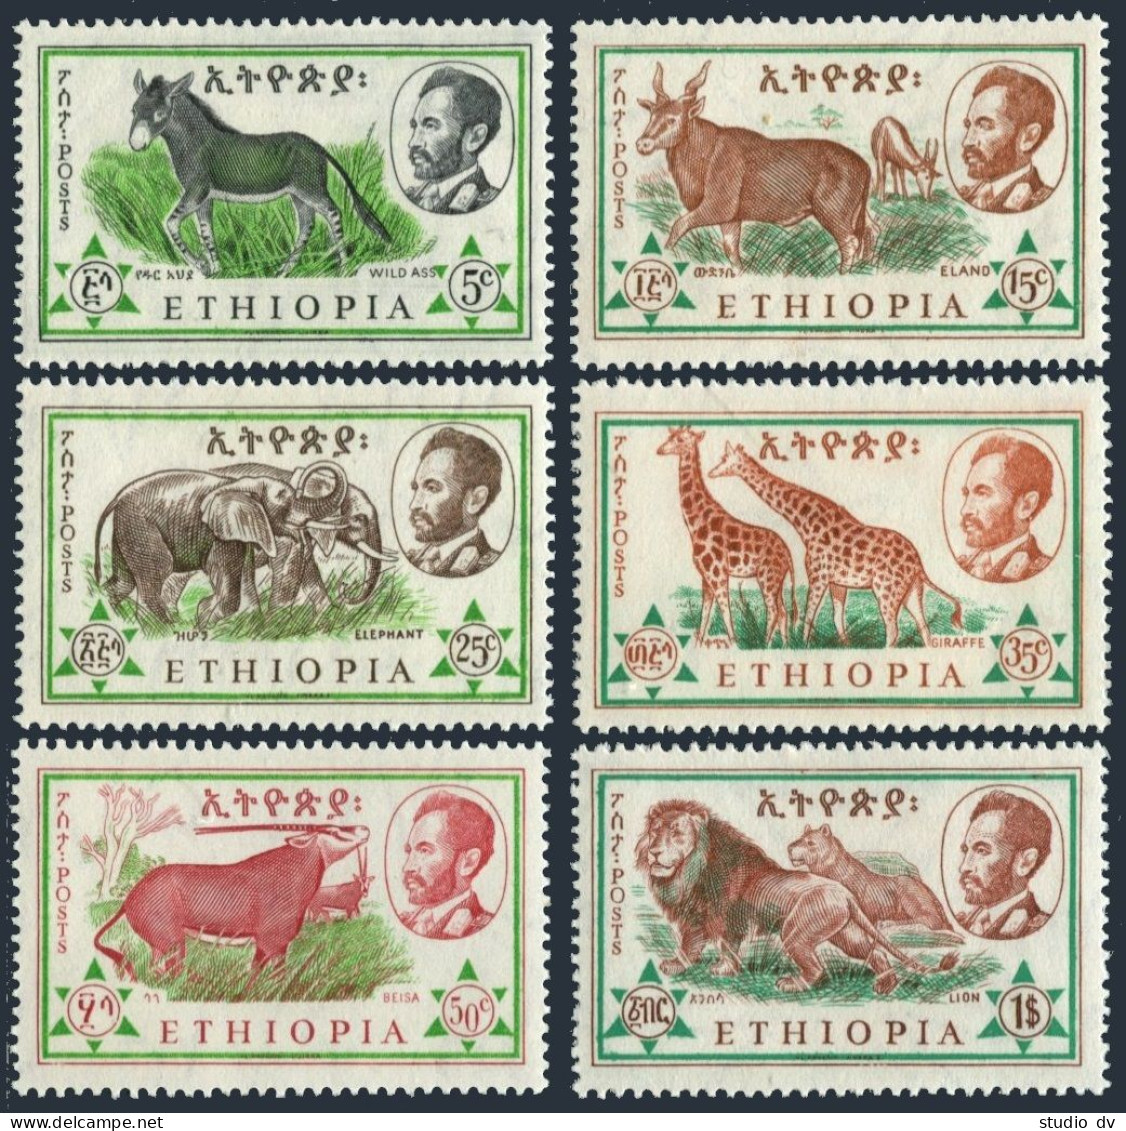 Ethiopia 369-374, MNH. Mi 408-413. 1961. Ass,Eland, Elephant,Giraffe,Beisa,Lion. - Ethiopie